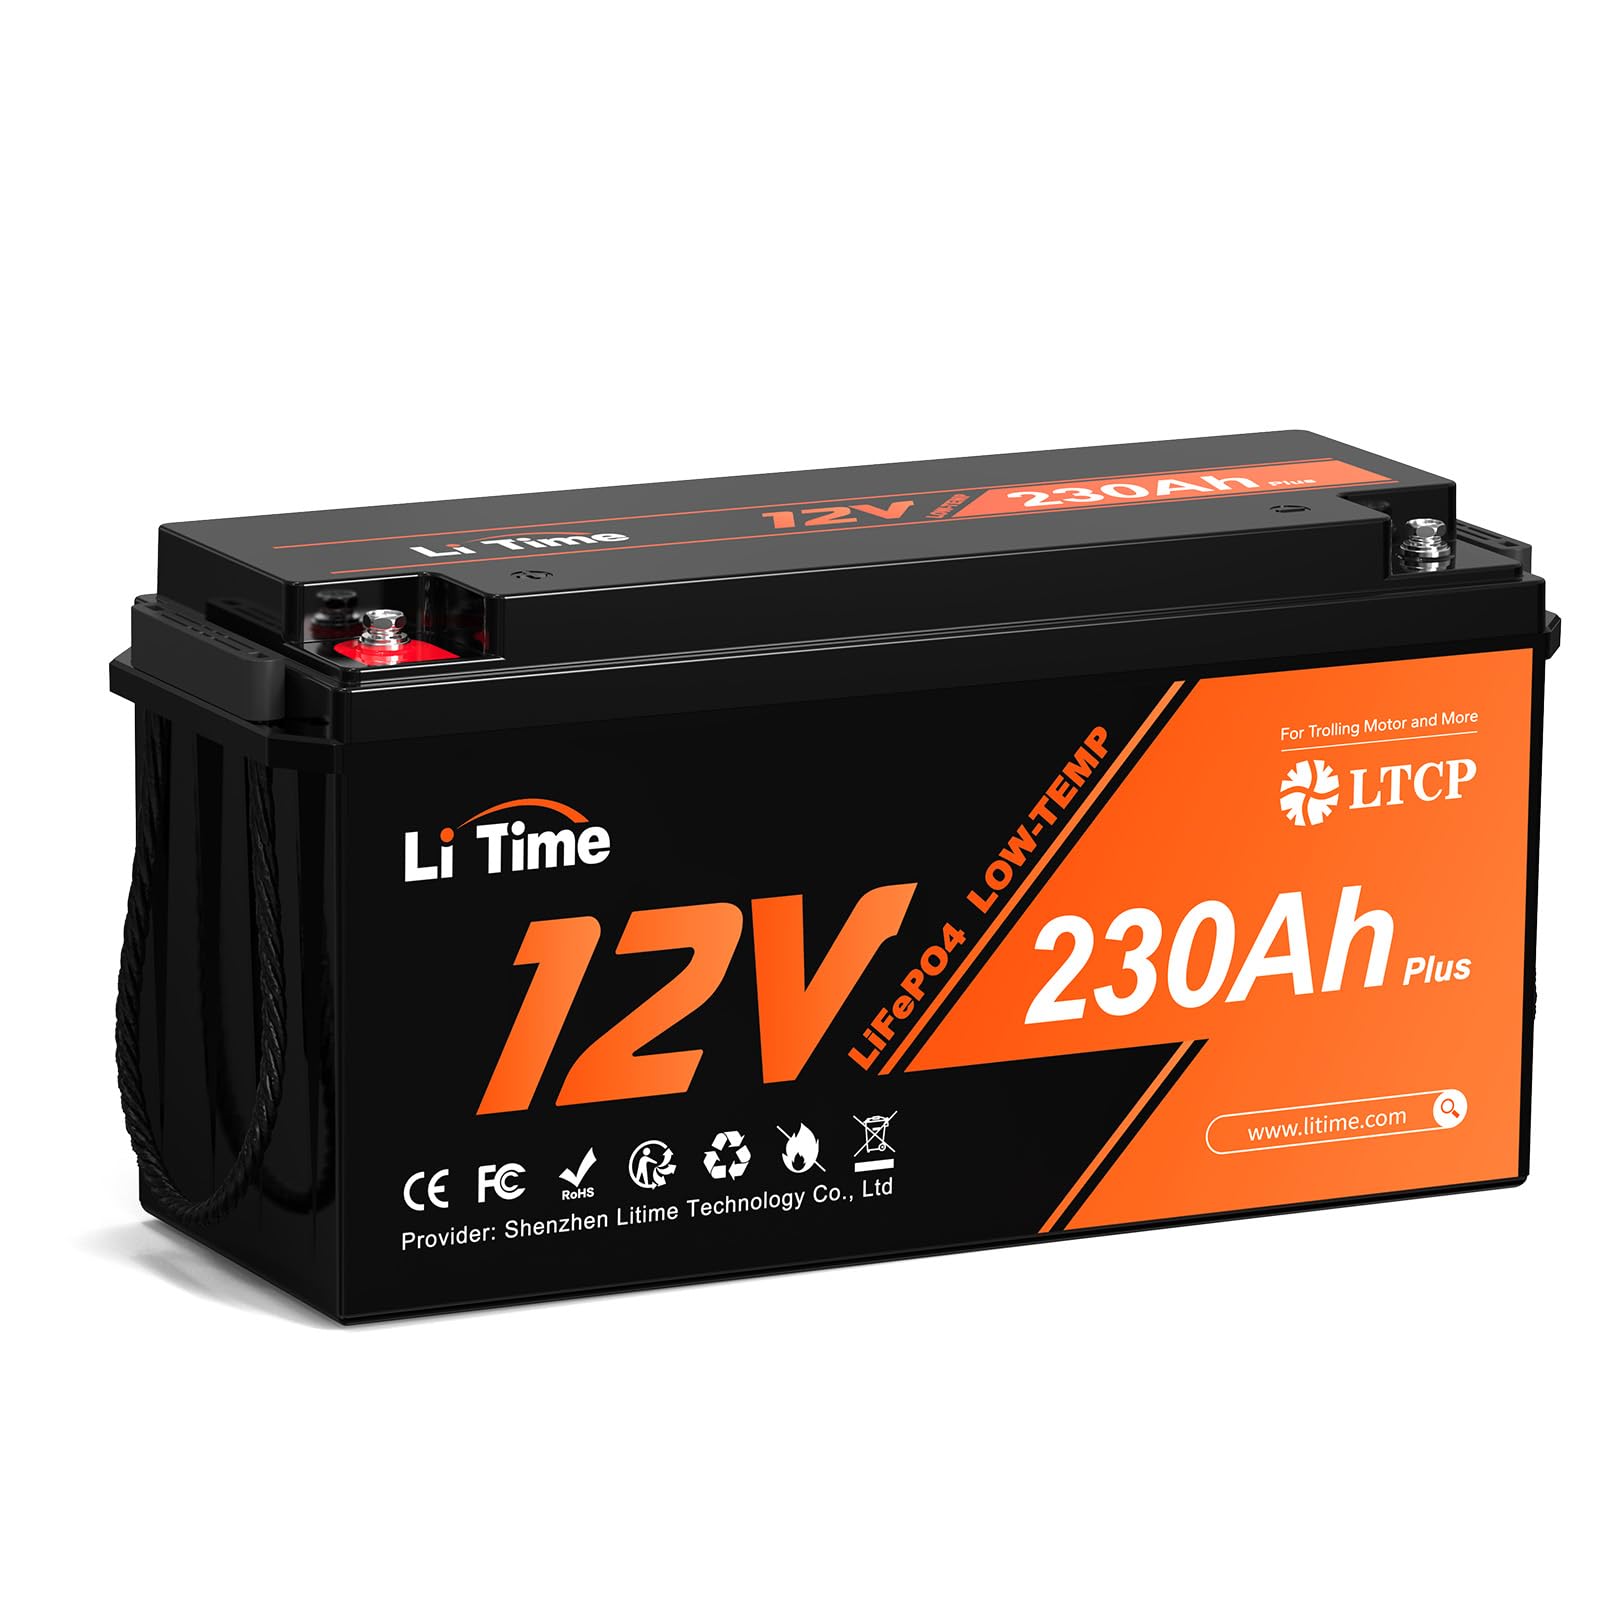 Litime 12V 230Ah Plus Low-Temp-Schutz LiFePO4 Lithium Batterie mit 200A BMS, 4000-15000 Zyklen, 10 Jahre Lebensdauer, Max 2944Wh Energie Perfekt für Solaranlage, Womo, Camping, Boot, Hausenergiespeich von Litime